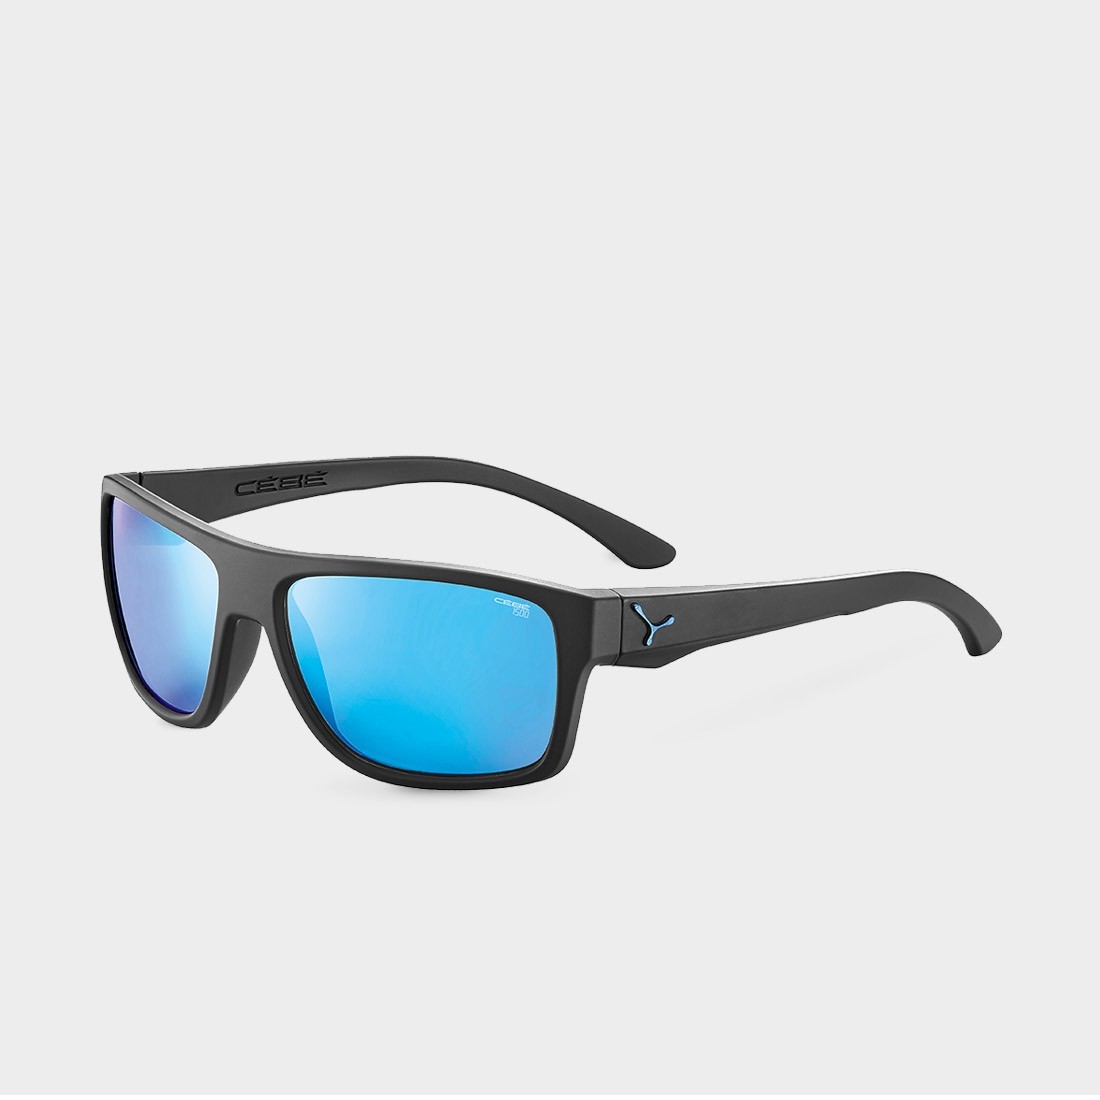 cebe-empire-lunettes-sportstyle-large-noir-bleu